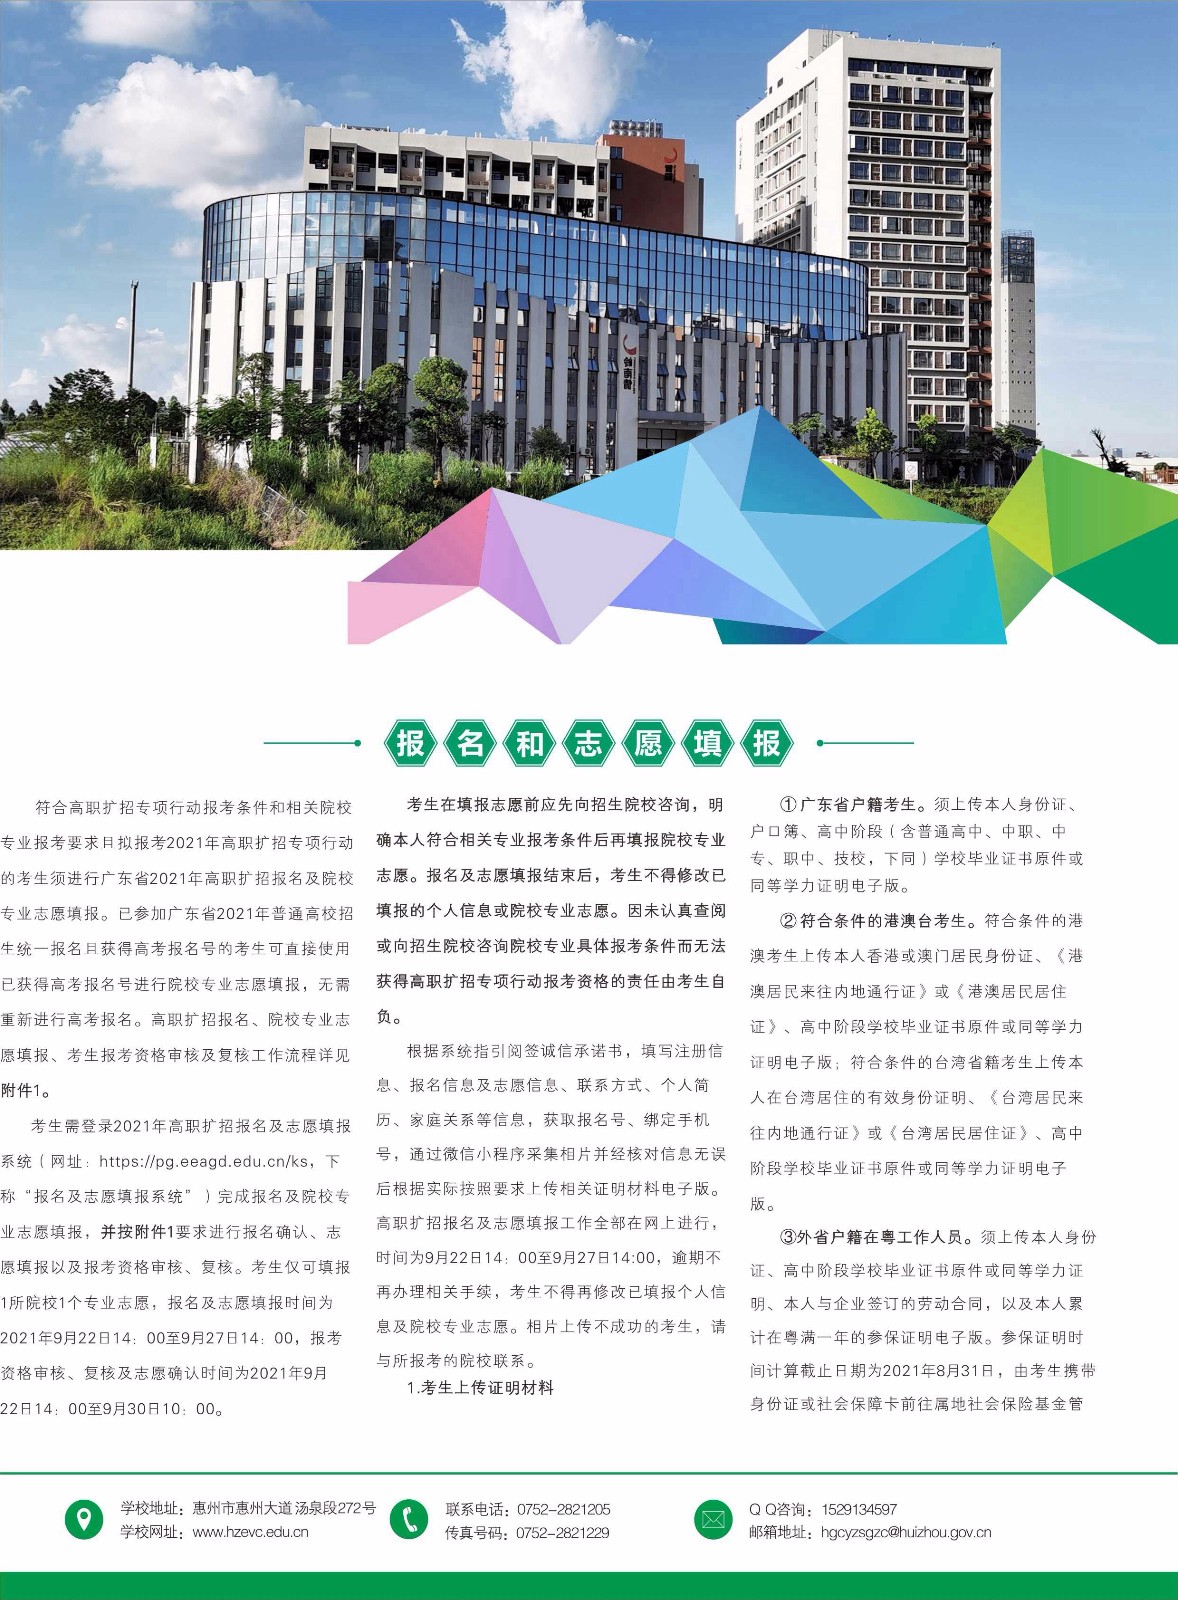 2021年惠州工程职业学院高职扩招招生简章